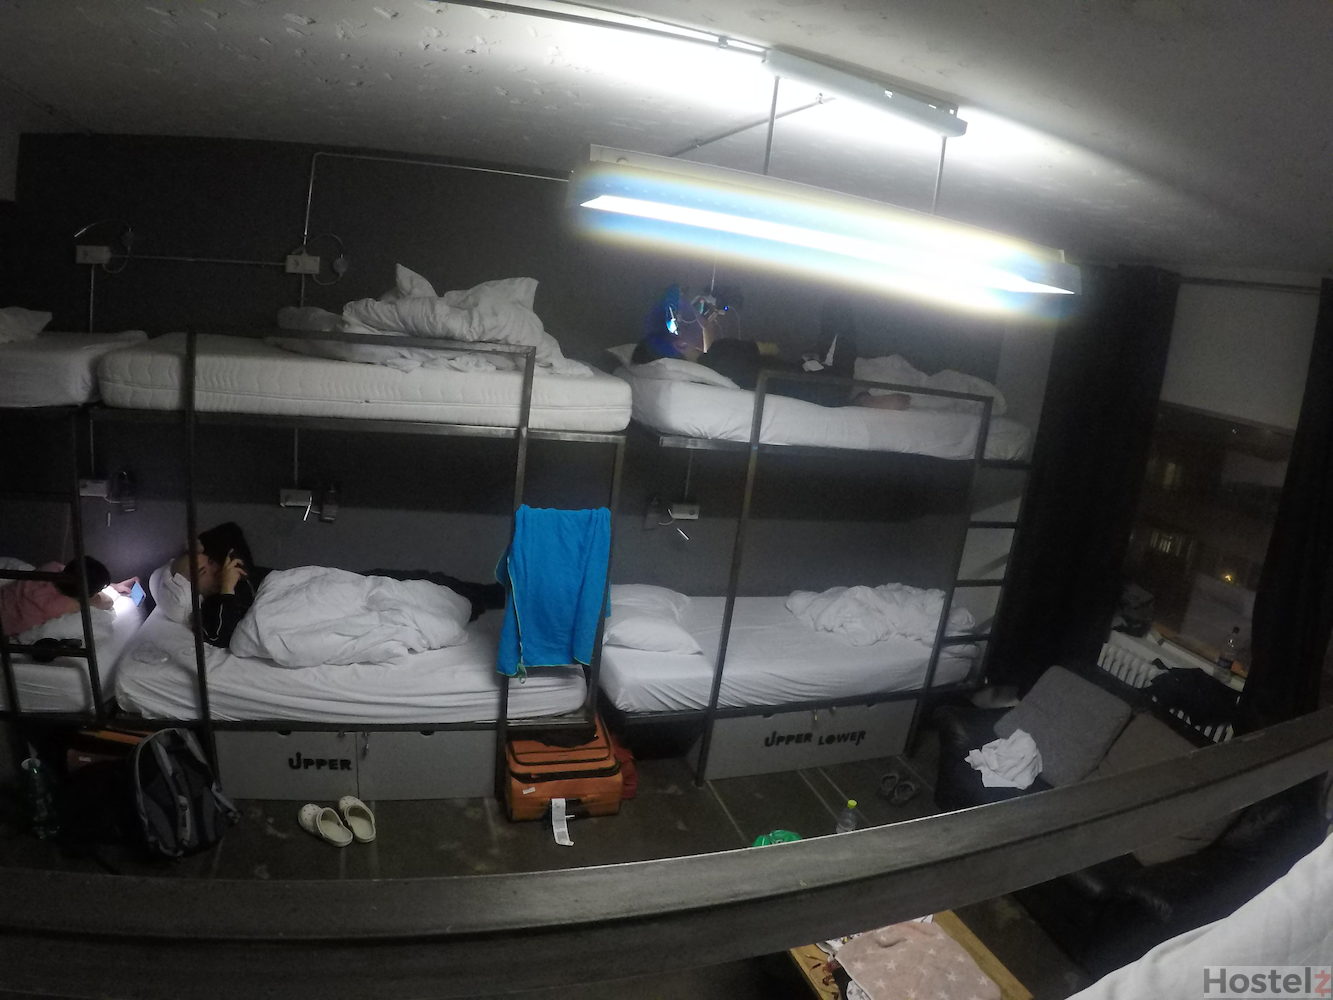 6 bed dorm room